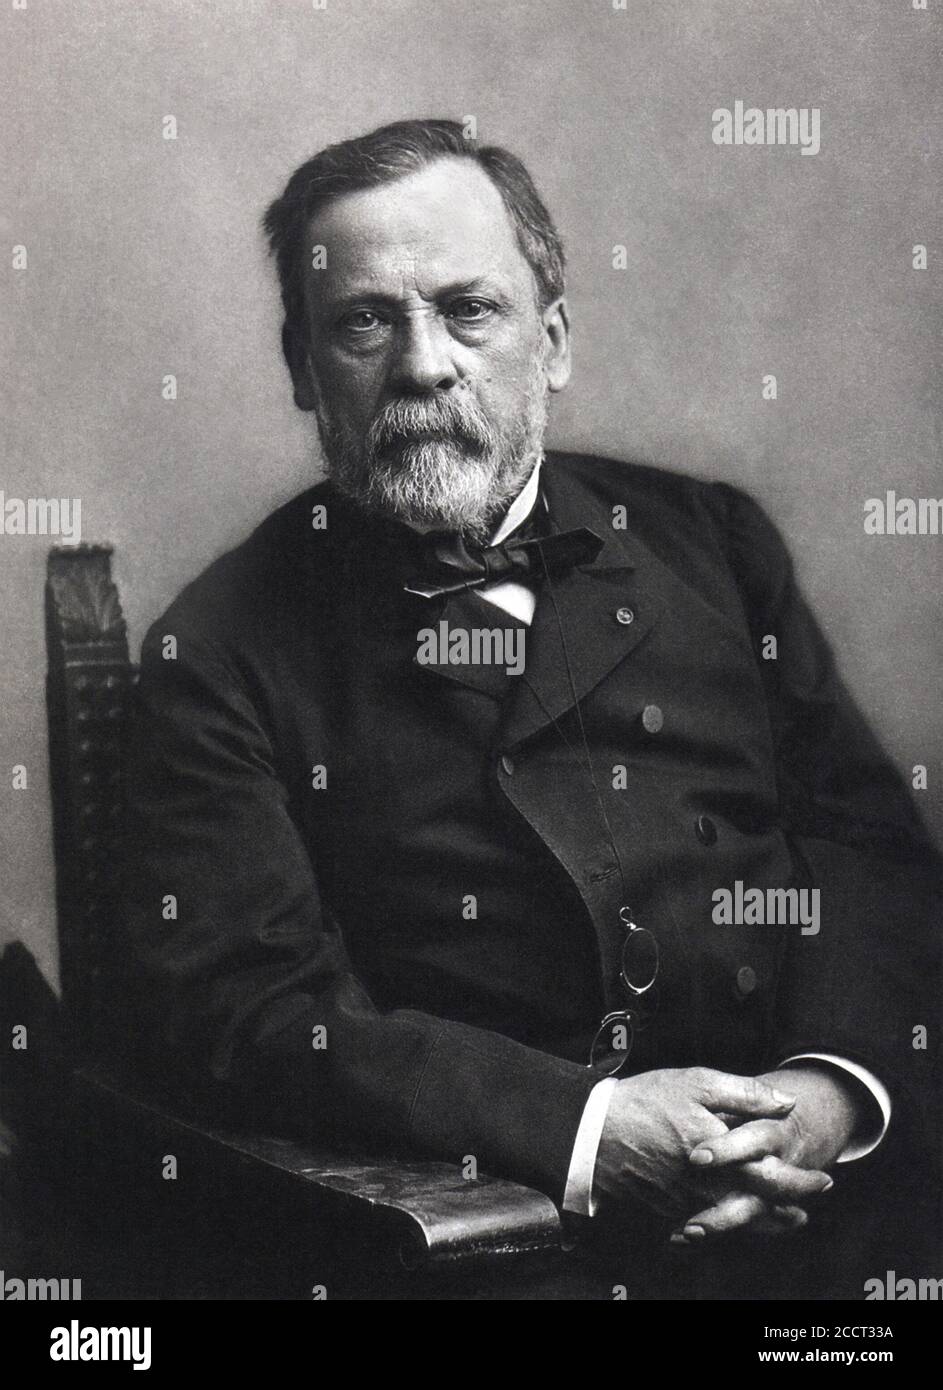 Porträt von Louis Pasteur (1822-1895). Pasteur war ein französischer Biologe, Mikrobiologe und Chemiker, der für seine Entdeckungen über die Prinzipien der Impfung, mikrobieller Fermentation und Pasteurisierung bekannt war. Foto von Paul Nadar, Datum unbekannt. Stockfoto